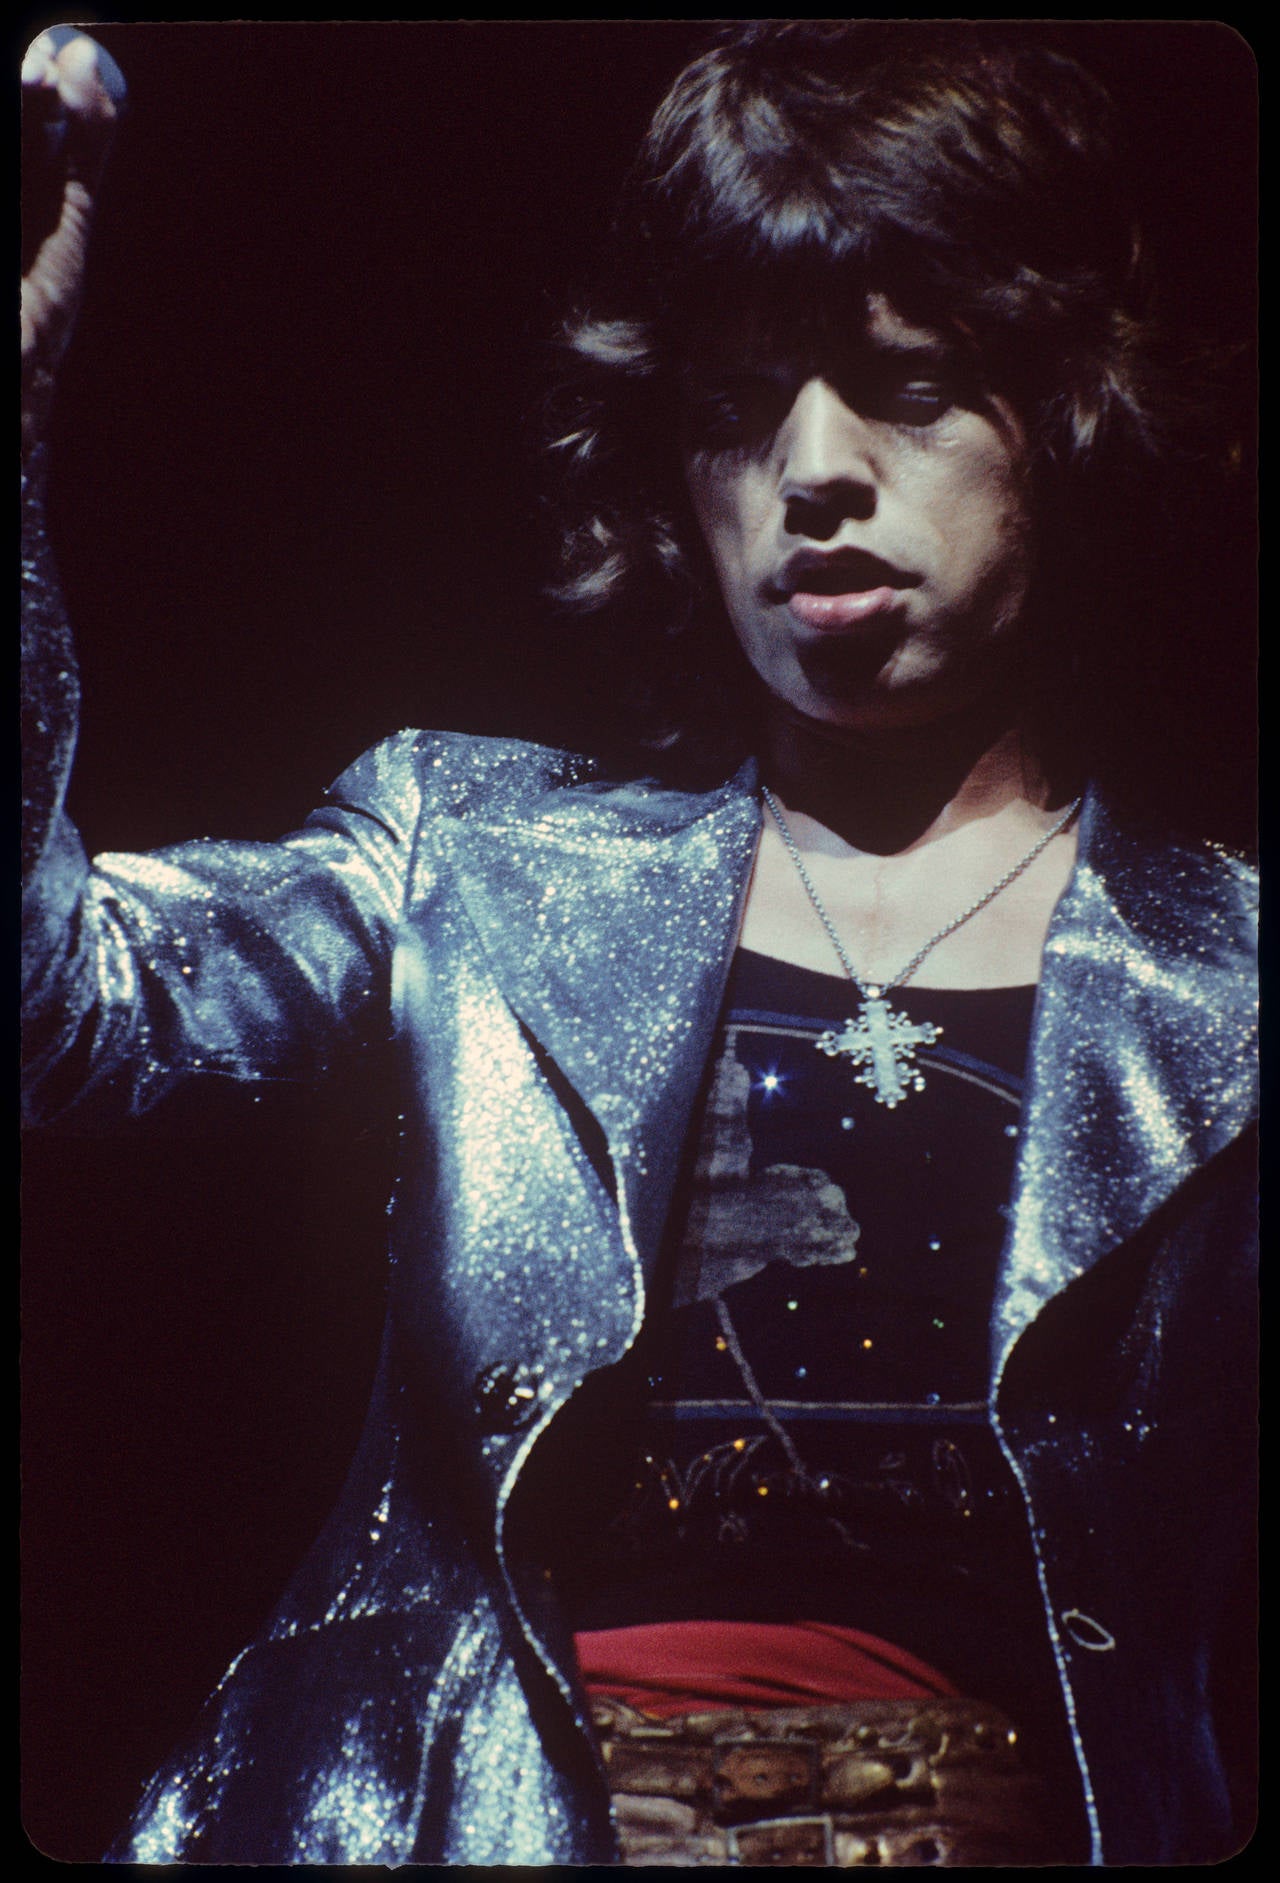 Mick Jagger "Cross"